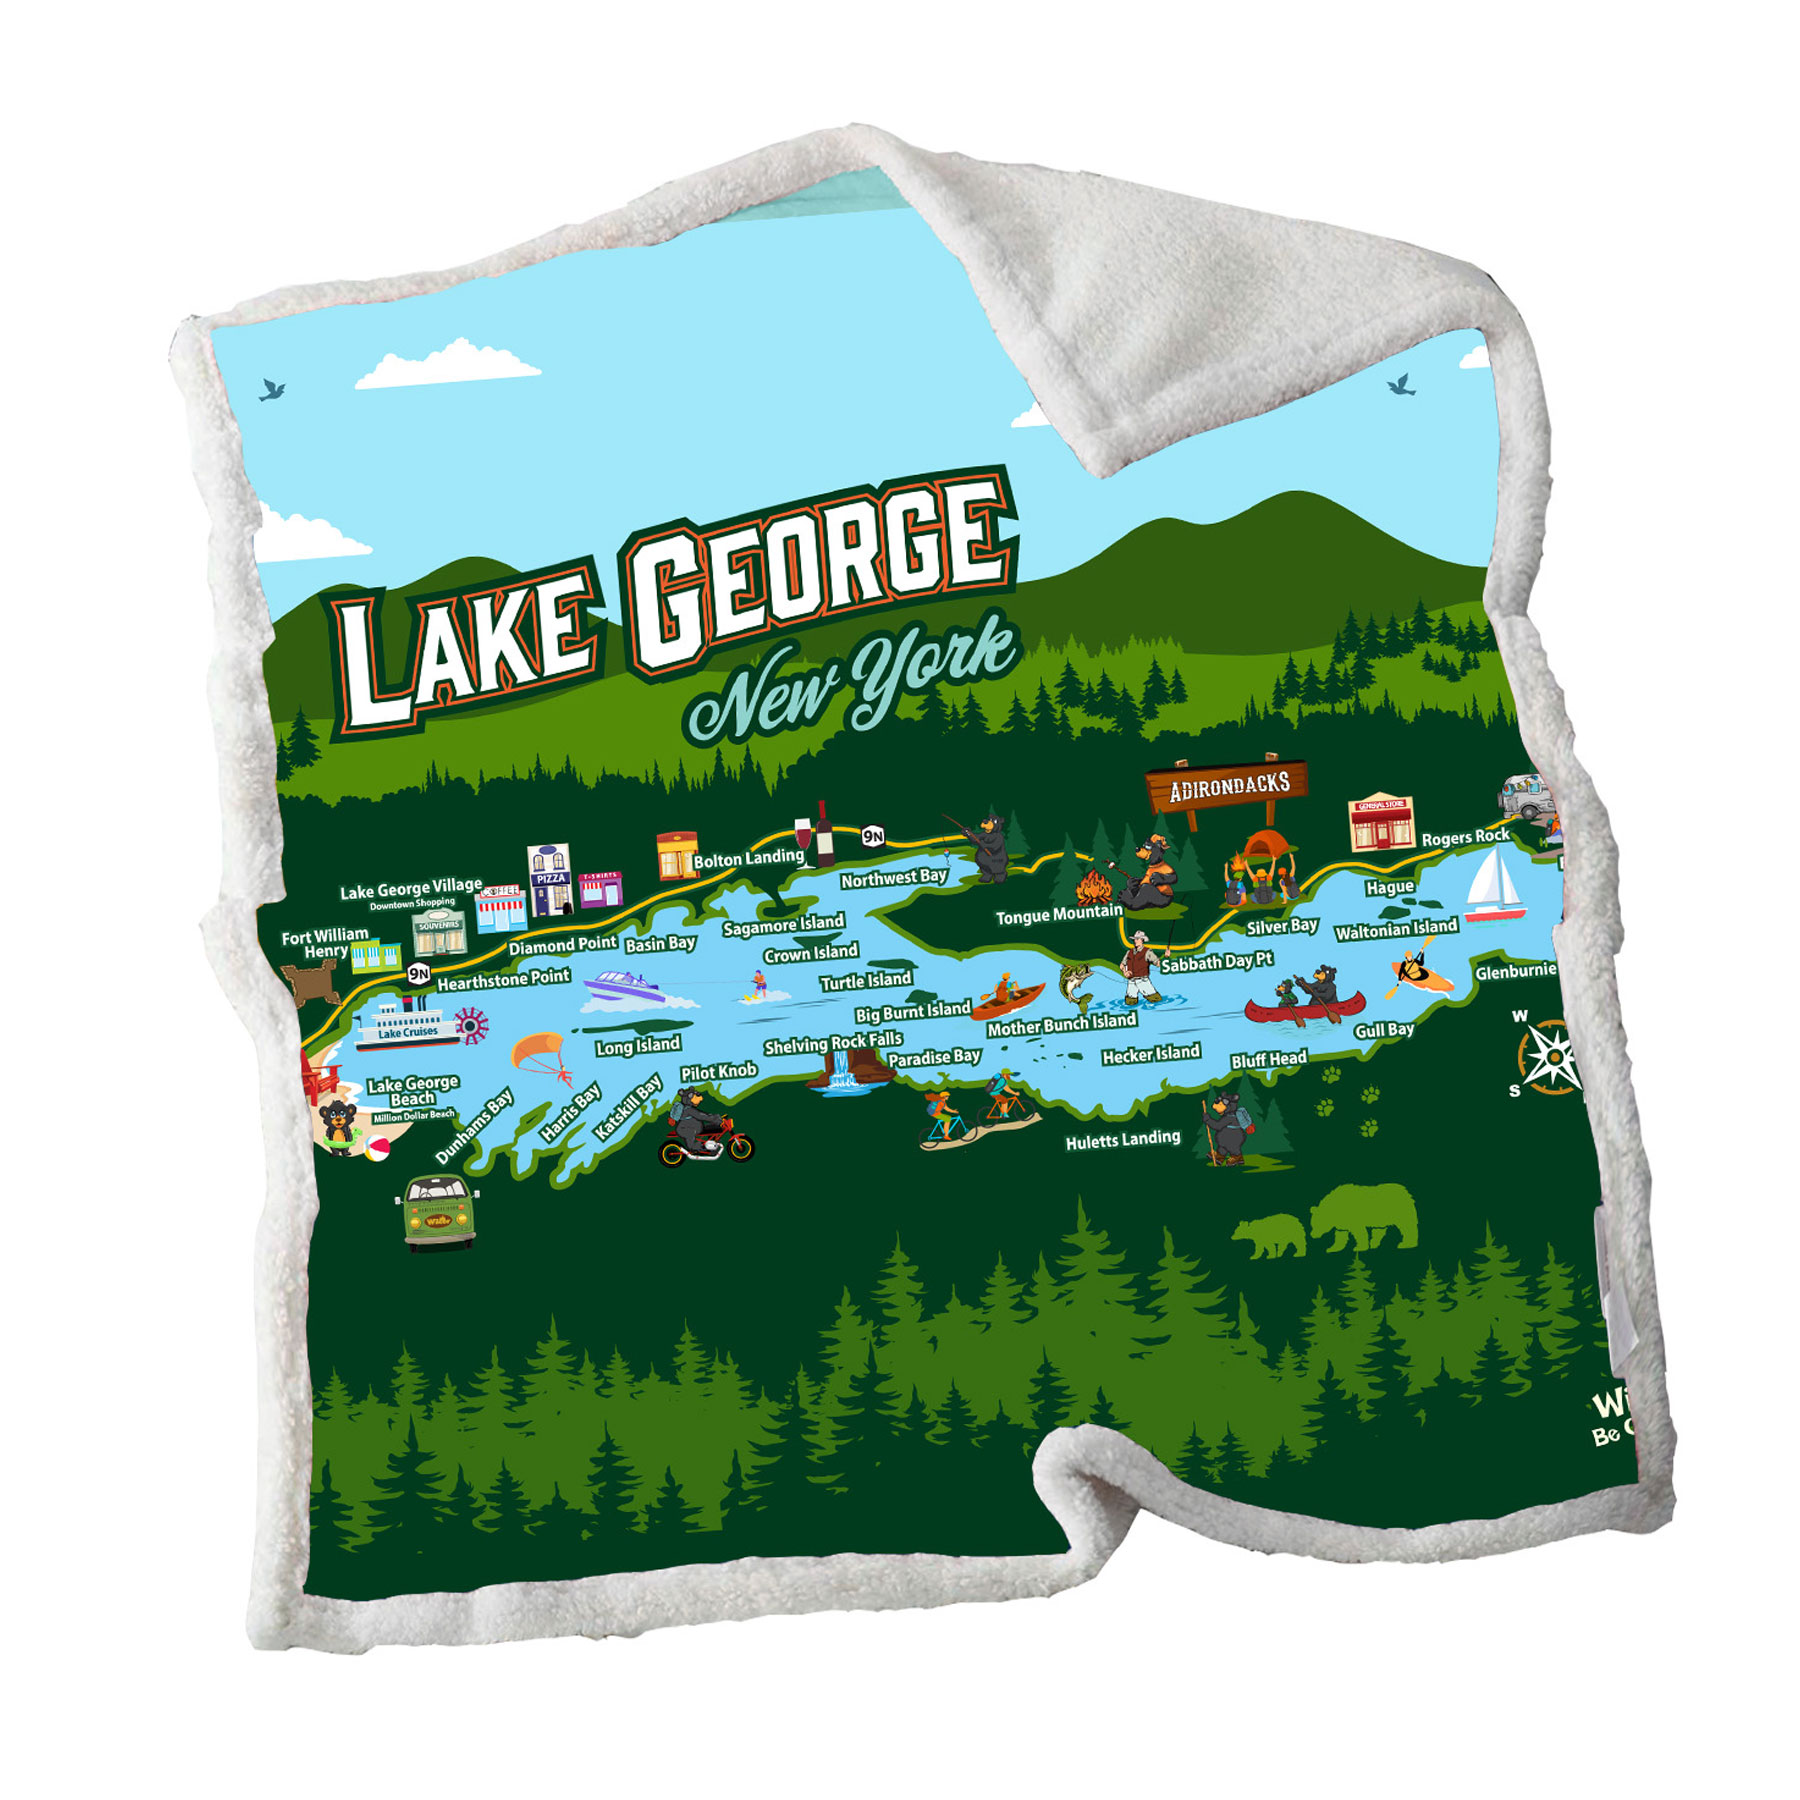 LAKE GEORGE MAP SHERPA BLANKET 50X60